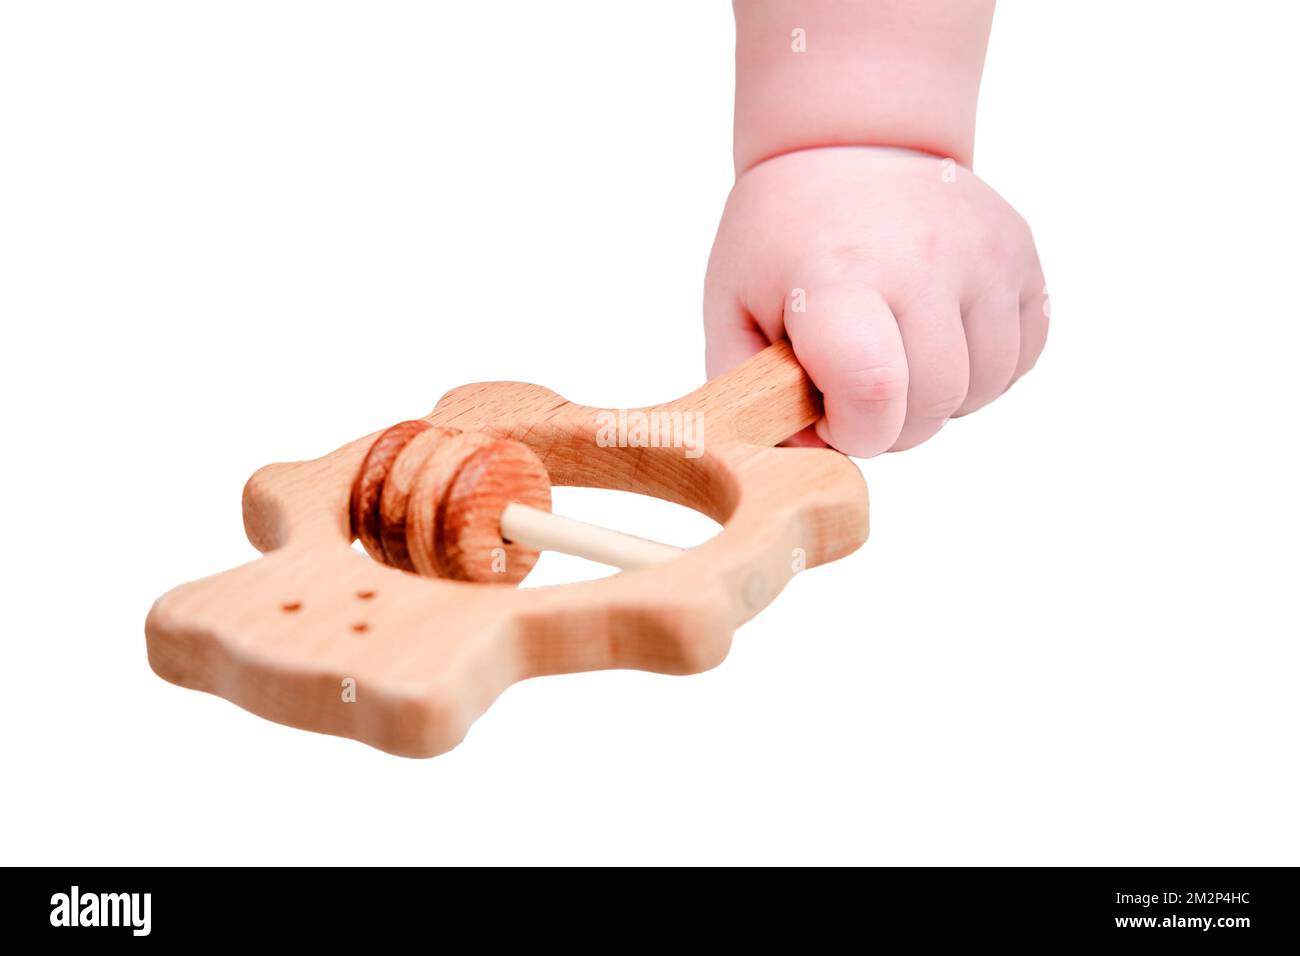 Bébé main et jouet hochet abacus, gros plan, isolé sur un fond blanc. Les doigts des enfants et un objet sur fond blanc Banque D'Images